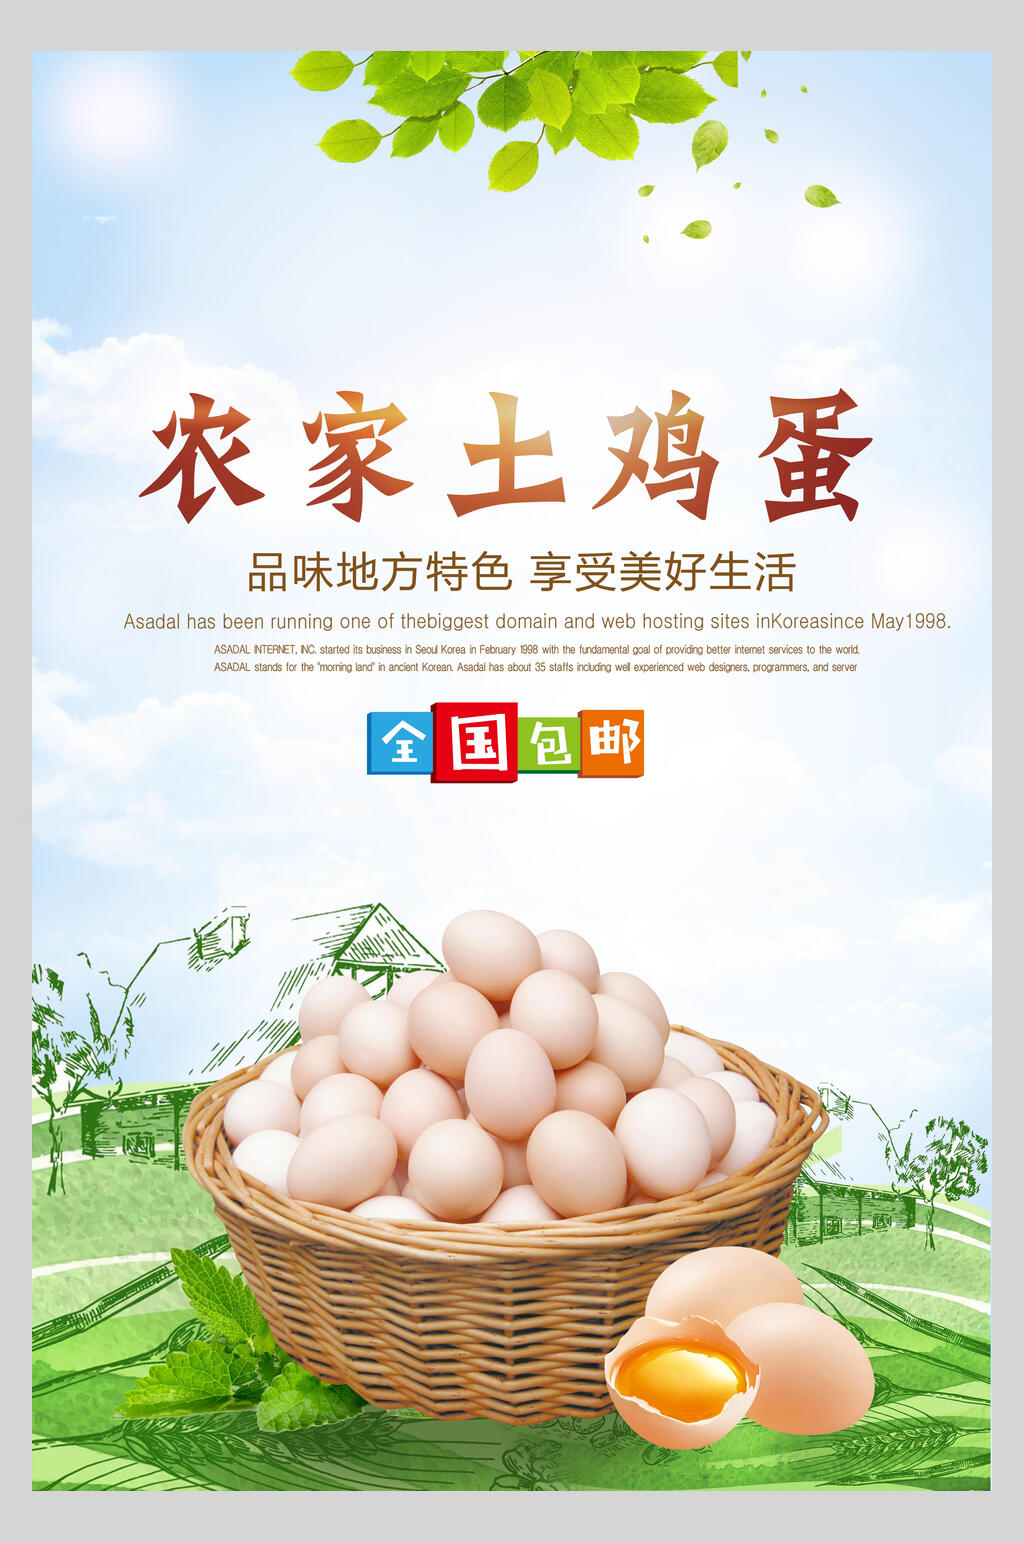 土鸡蛋海报素材免费下载,本作品是由小红1210上传的原创平面广告素材